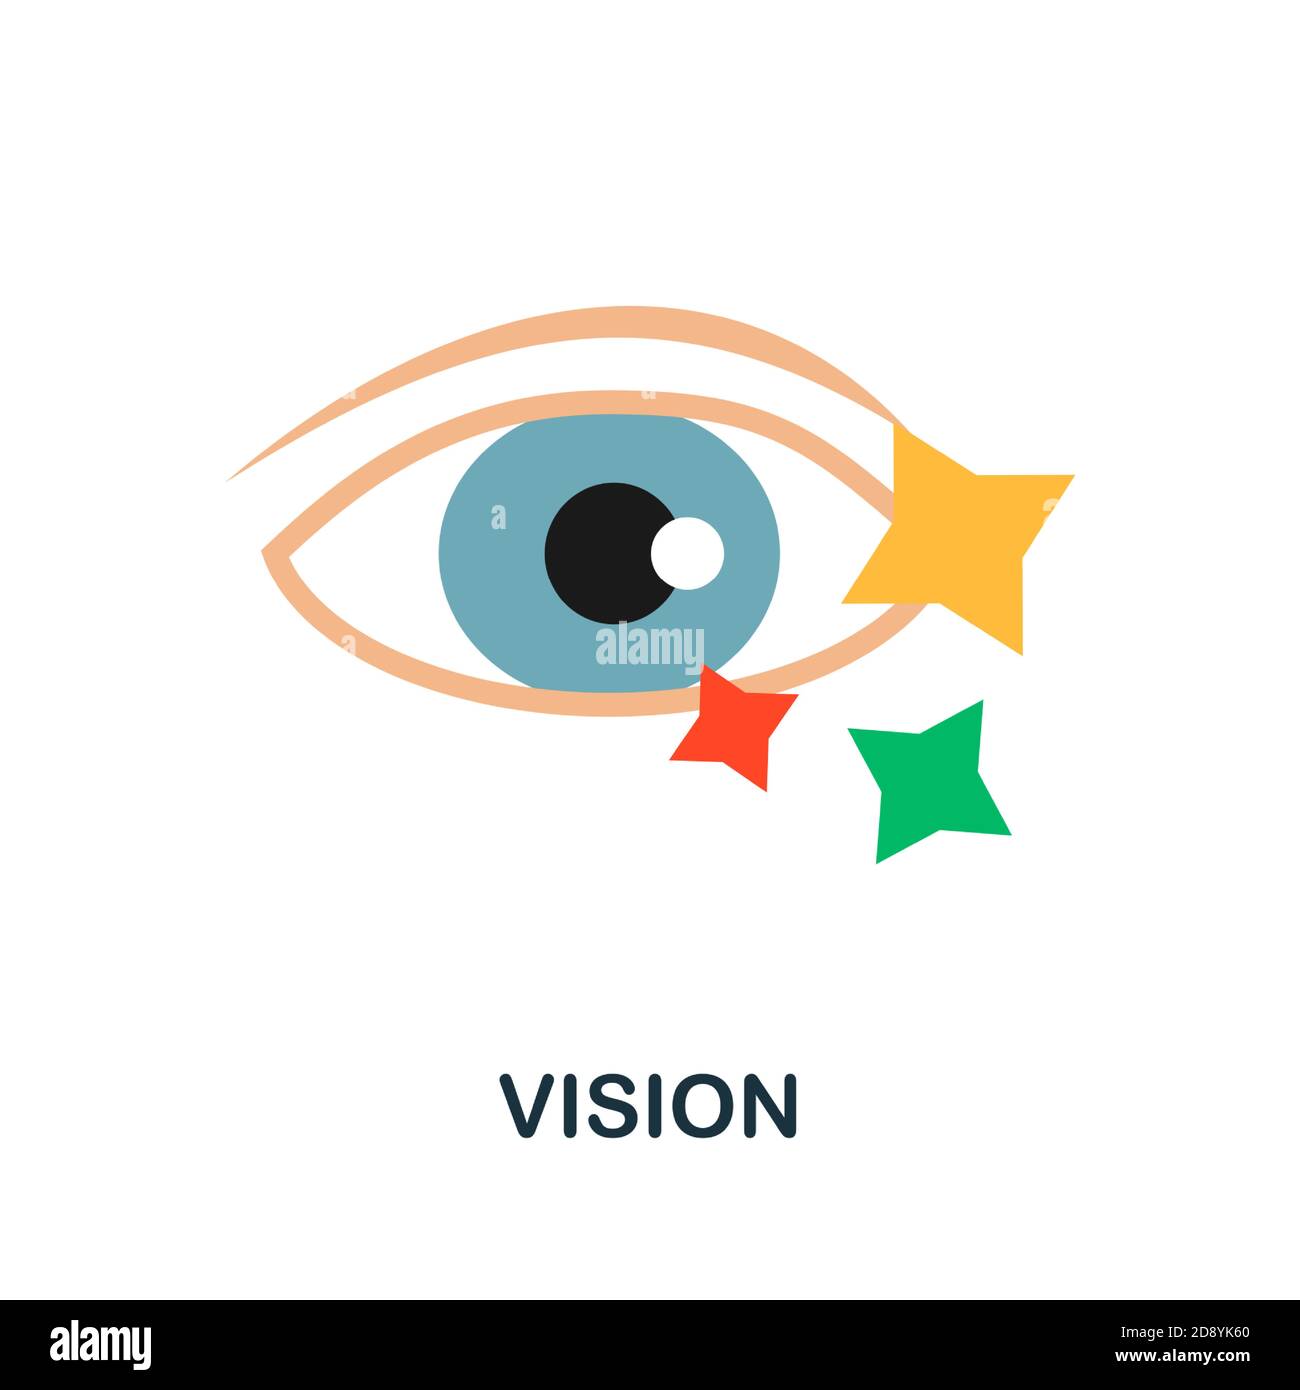 Vision-Symbol. Einfaches Element aus der Kollektion Creativity. Creative Vision Icon für Webdesign, Vorlagen, Infografiken und vieles mehr Stock Vektor